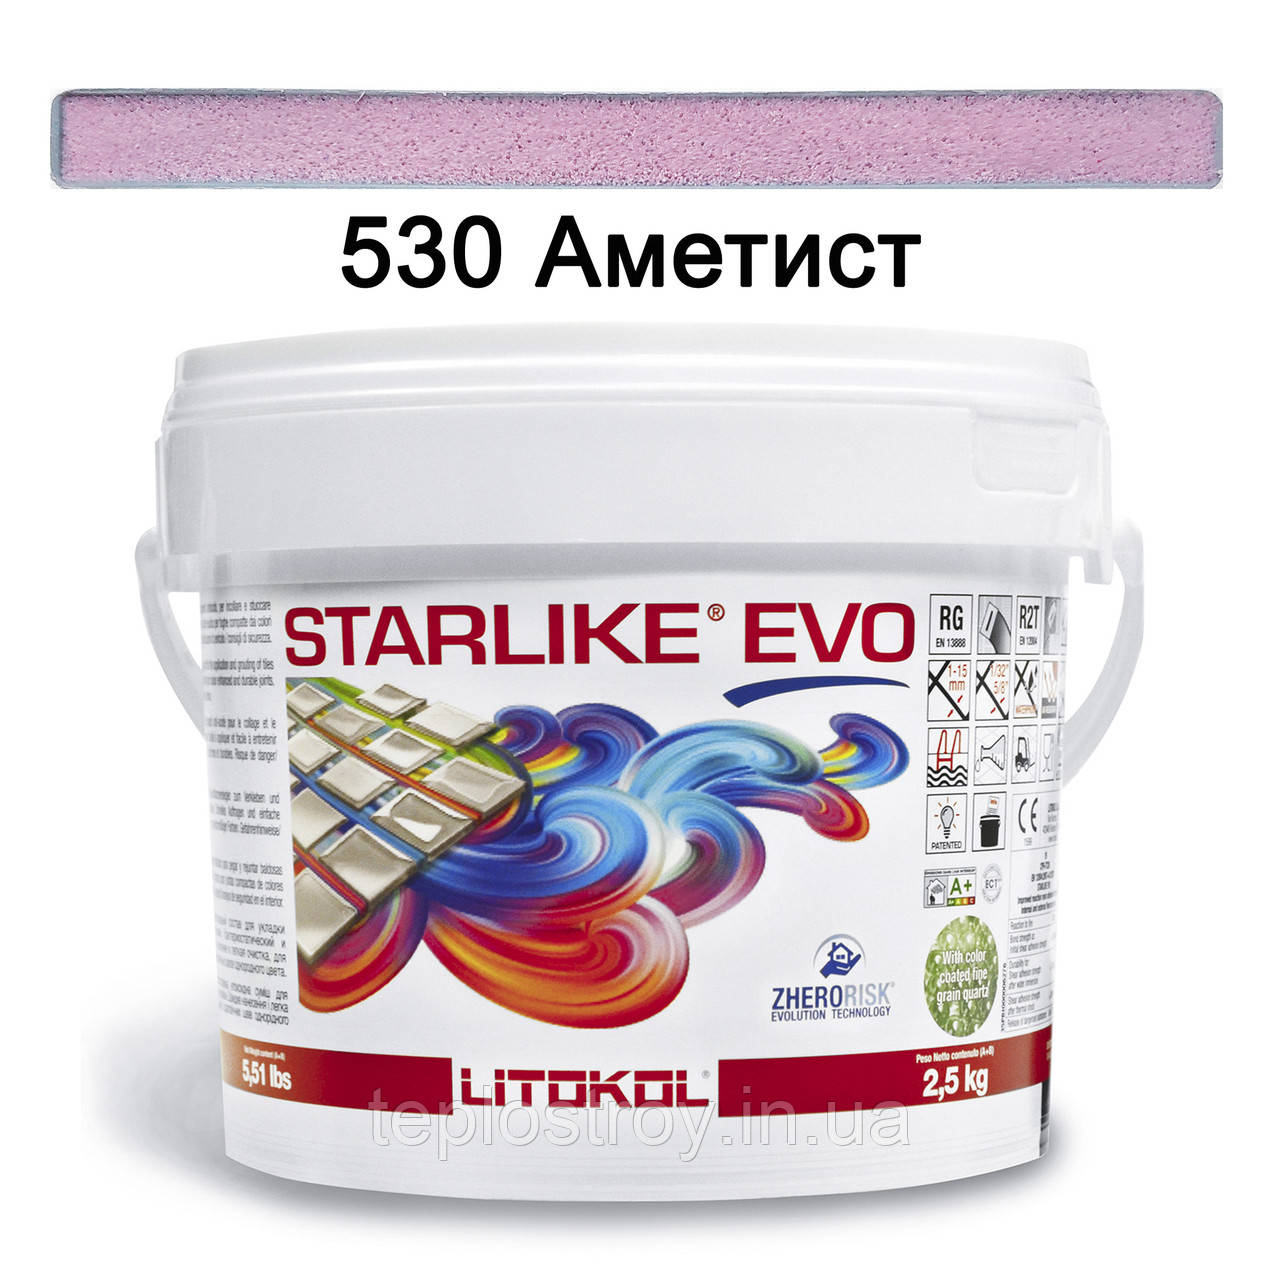 Епоксидна затирка Starlike EVO 530 (Аметист) GLAM COLLECTION  2.5 кг